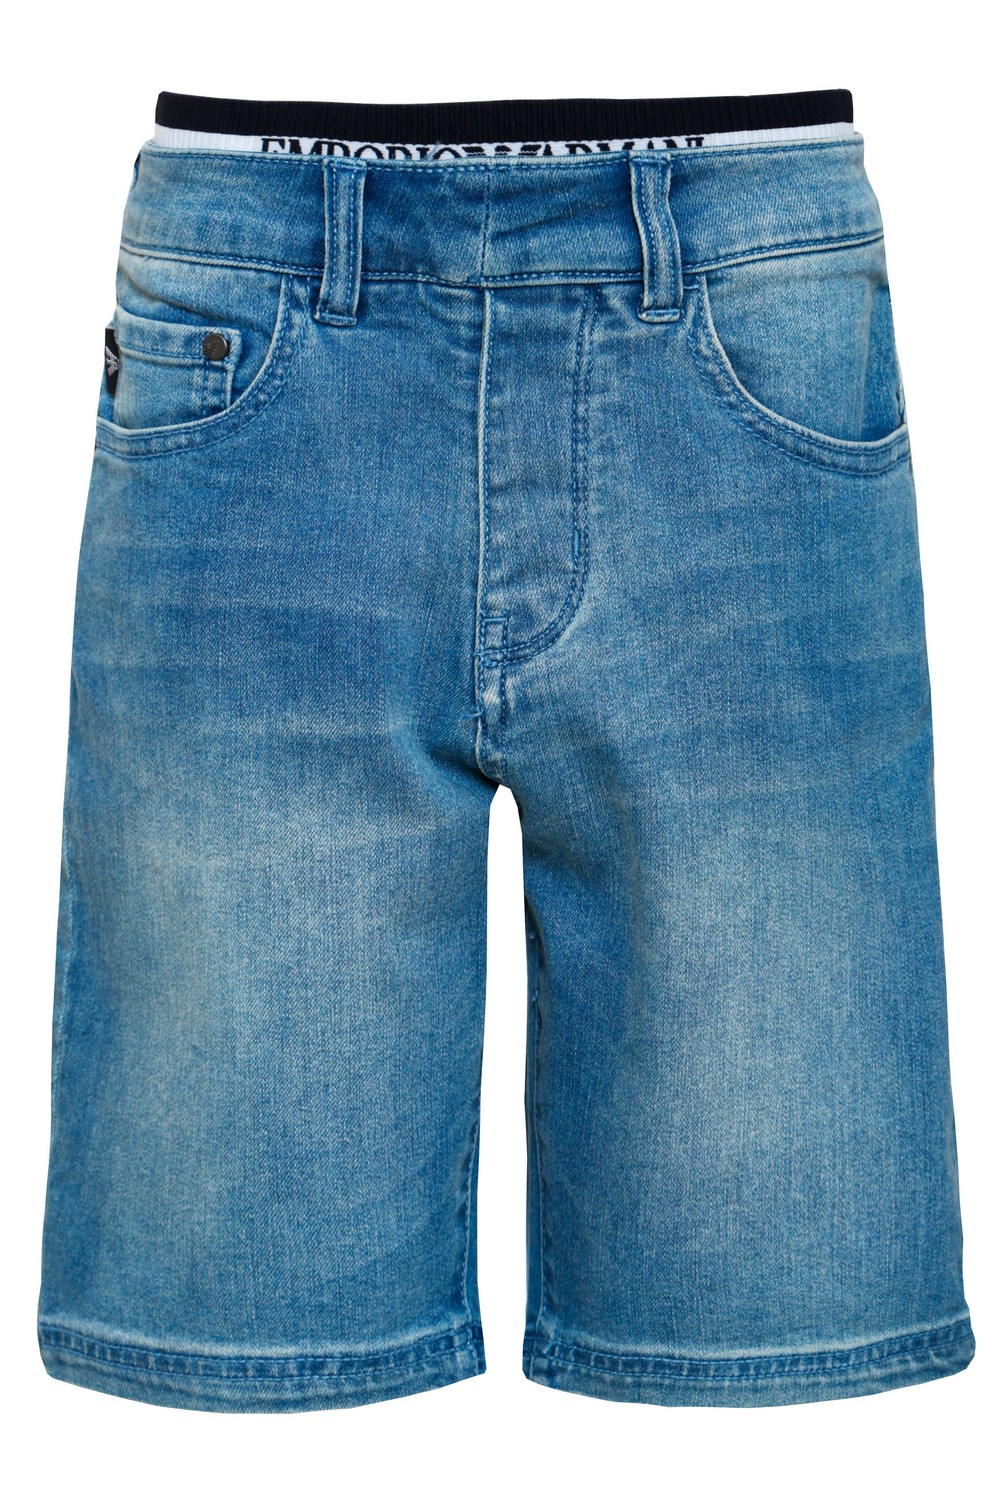 Armani Junior Джинсовые шорты с принтованной резинкой